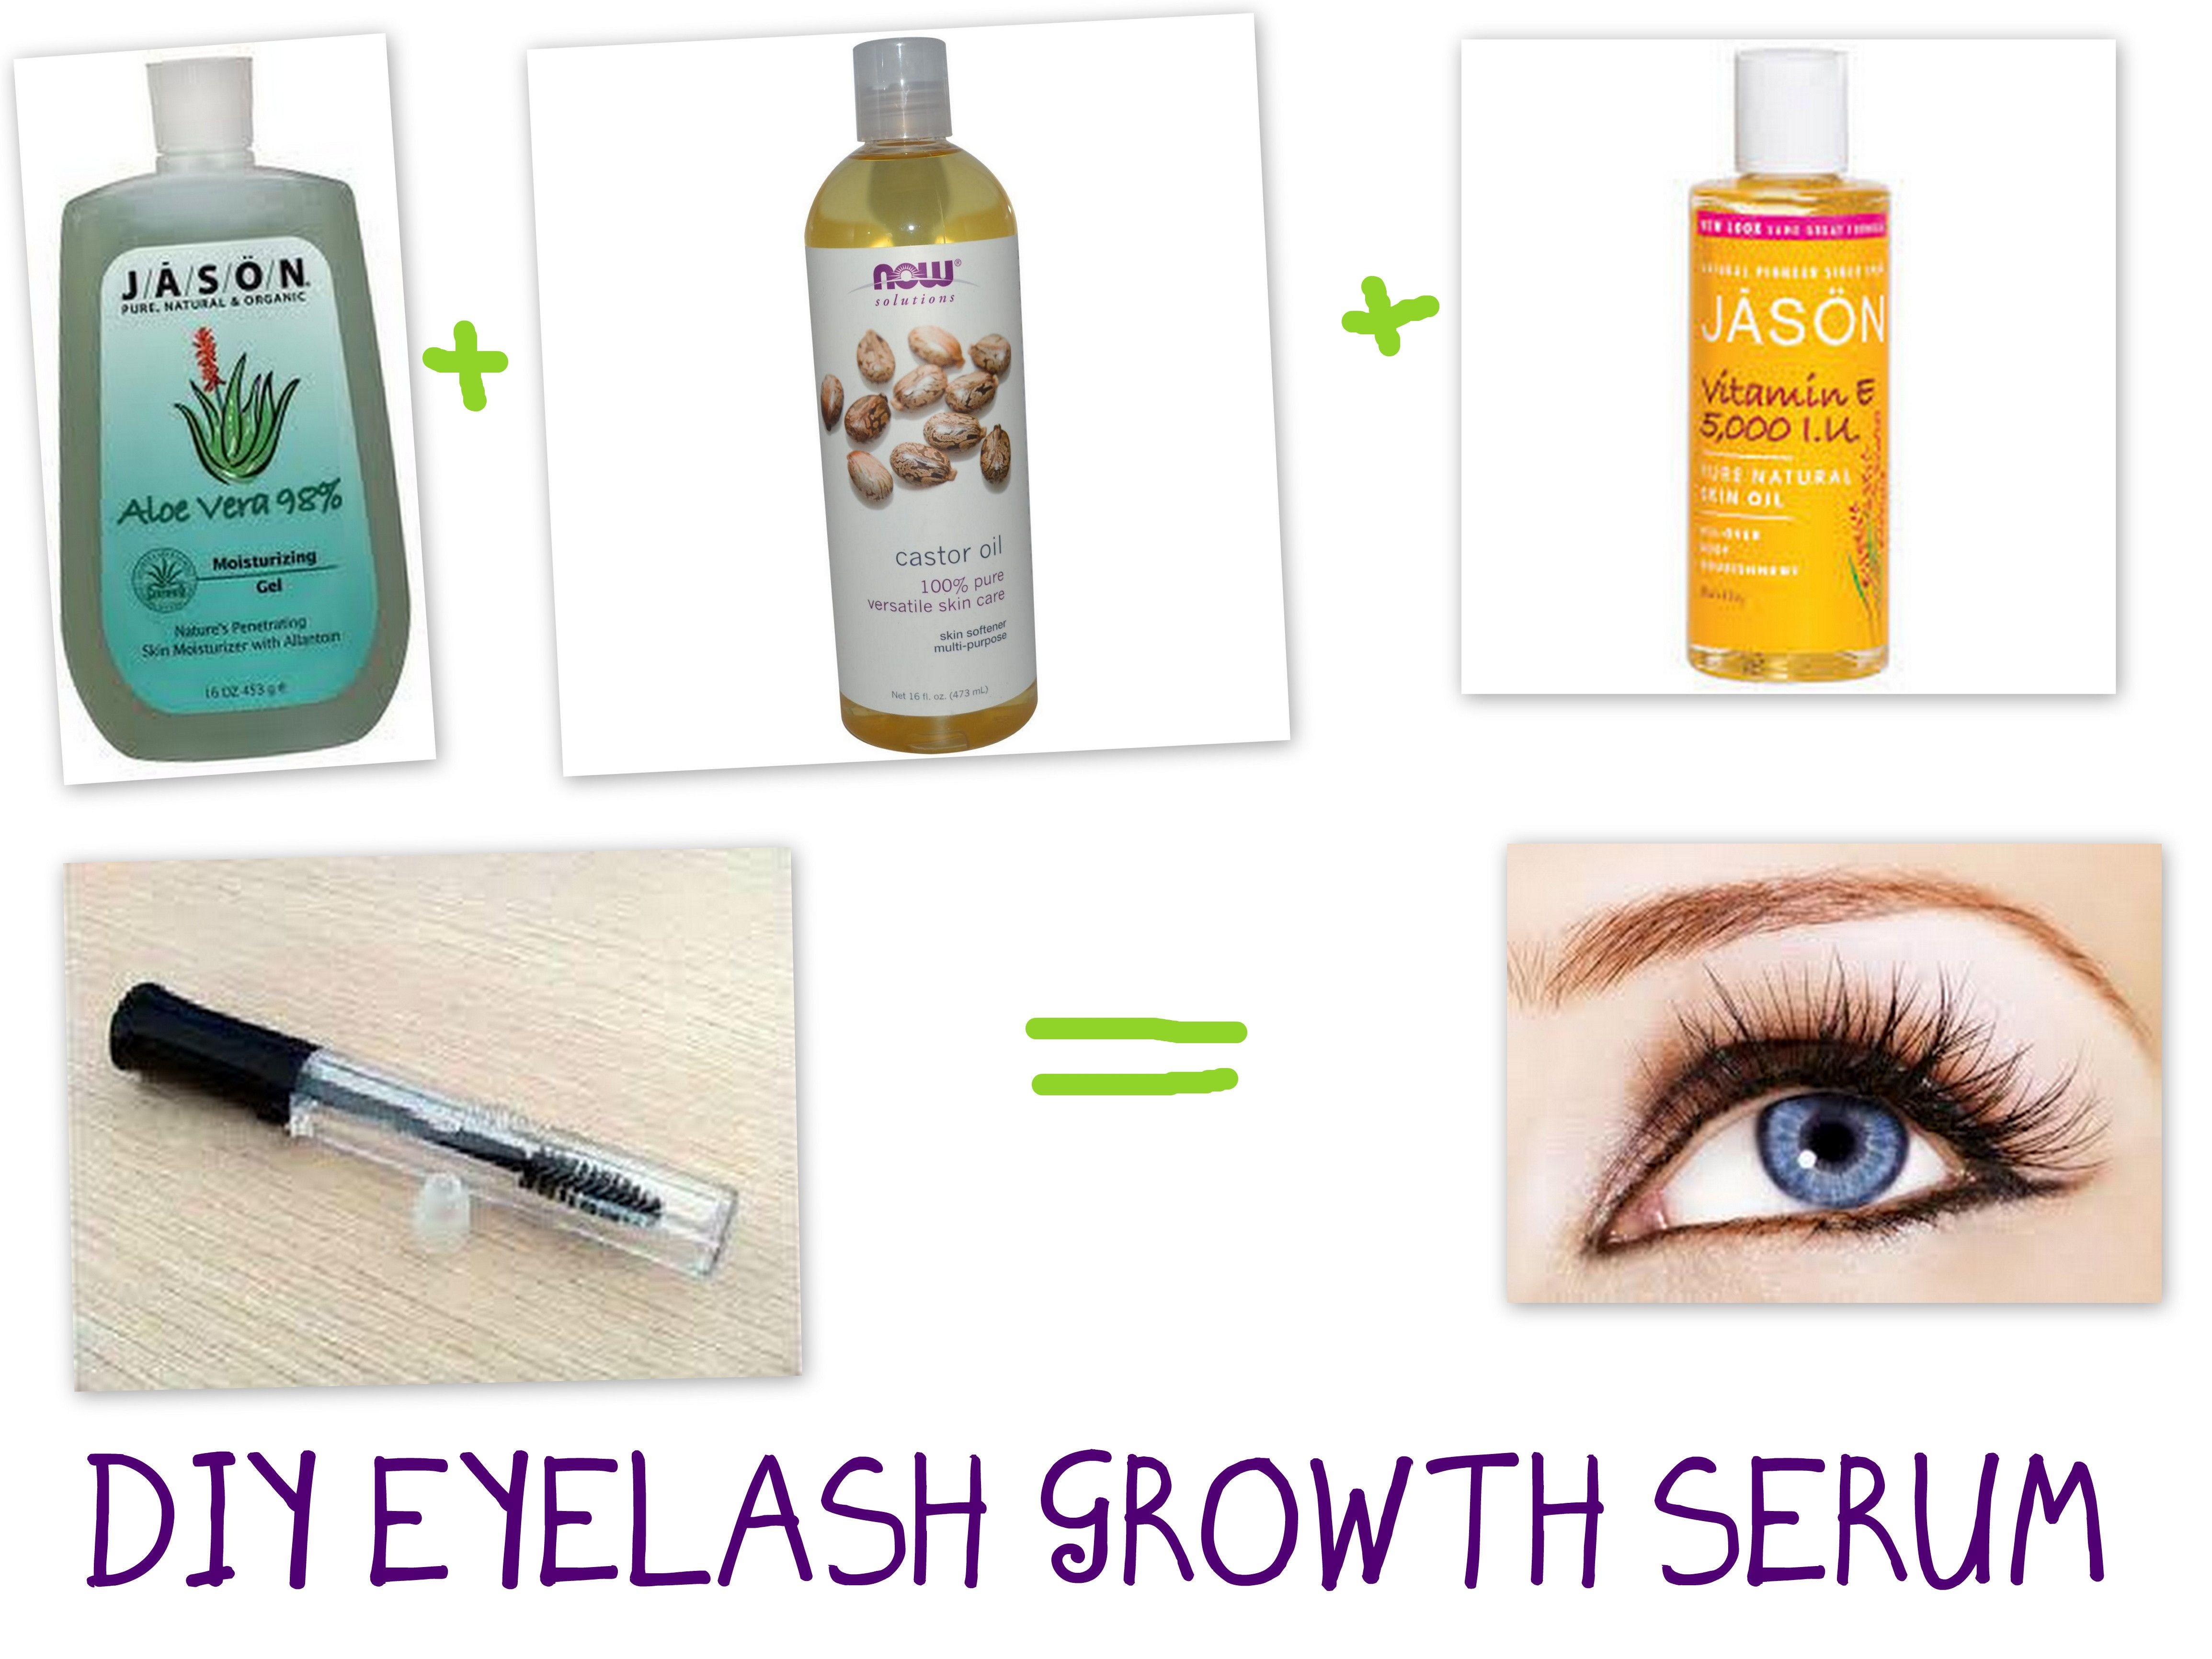 Best ideas about Eyelash Serum DIY
. Save or Pin DIY EYELASH GROWTH SERUM Now.